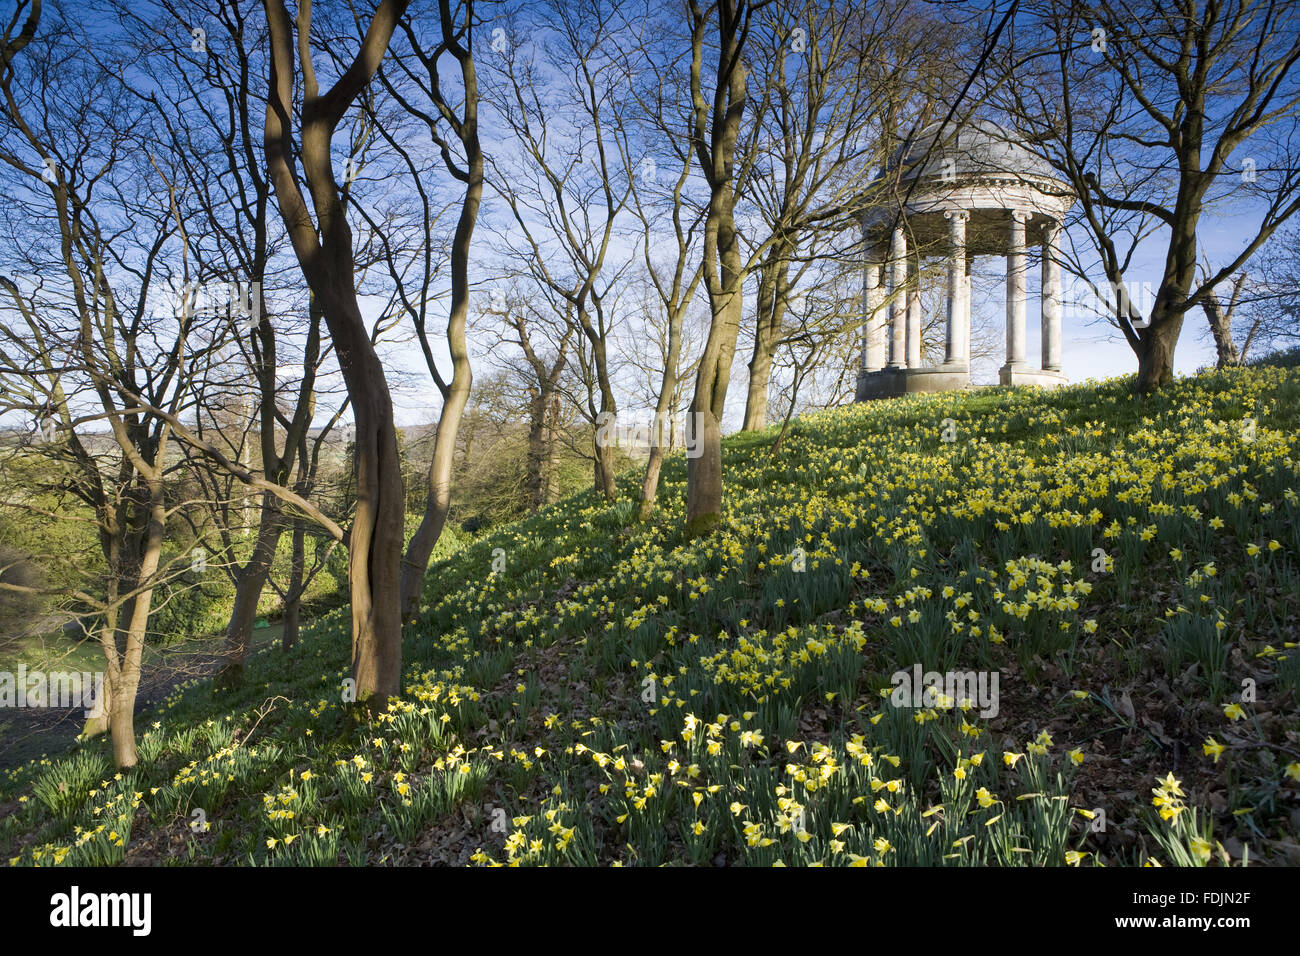 La rotonde construite en 1766, et des jonquilles dans le parc à Petworth House, West Sussex. La rotonde ionique peut avoir été conçu par Matthew Brettingham probablement inspiré par Vanbrugh's rotondes. Banque D'Images